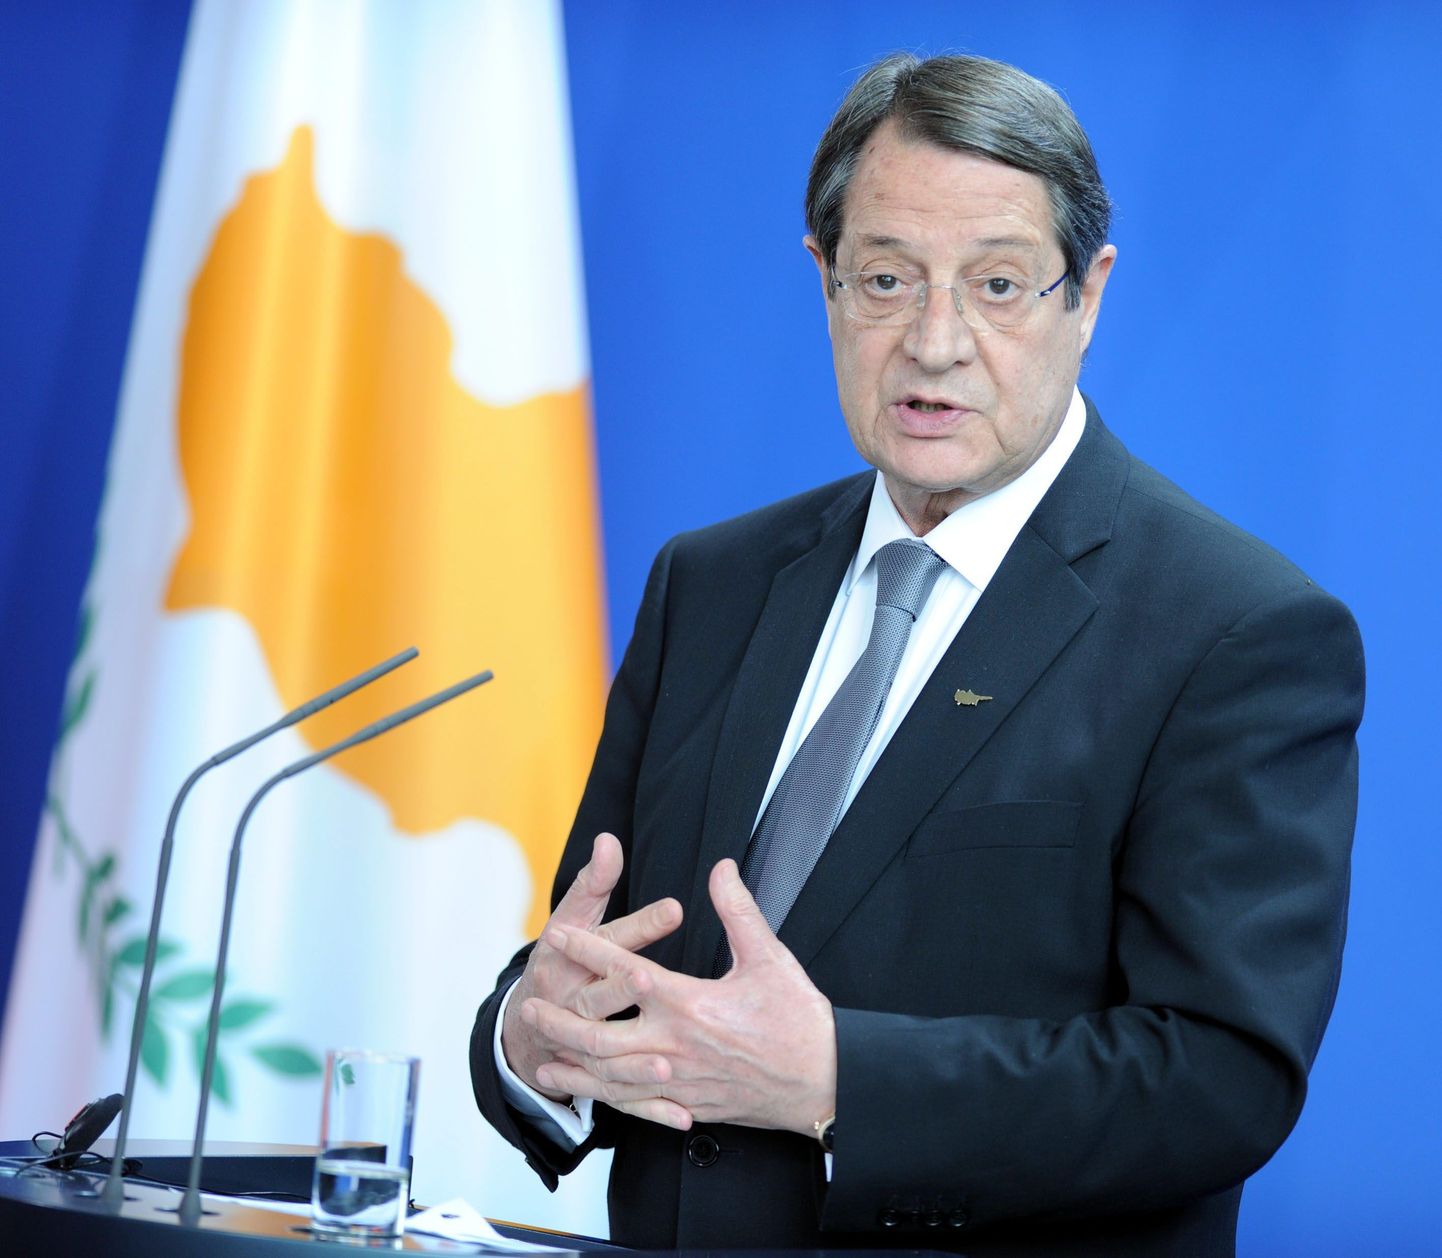 Küprose president Nikos Anastasiades 2014. aastal. Anastasiades on olnud saareriigi president alates 2013. aastast.